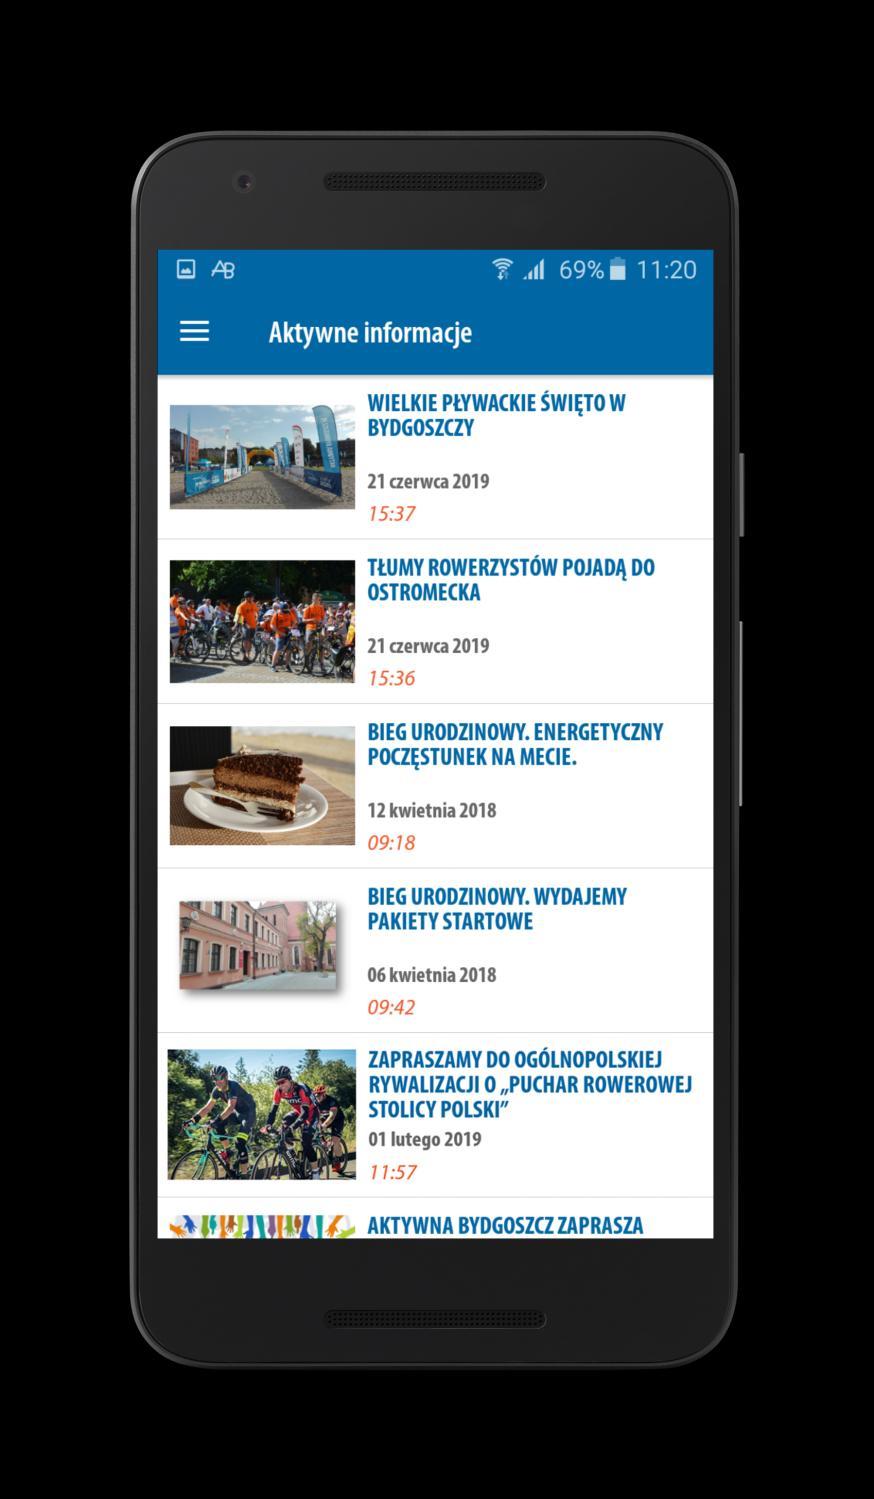 Dział: Aktywne Informacje Aktywne informacje W układzie tabelarycznym prezentowane najnowsze informacje dotyczące Aktywnej Bydgoszczy i Rywalizacji o Puchar Rowerowej